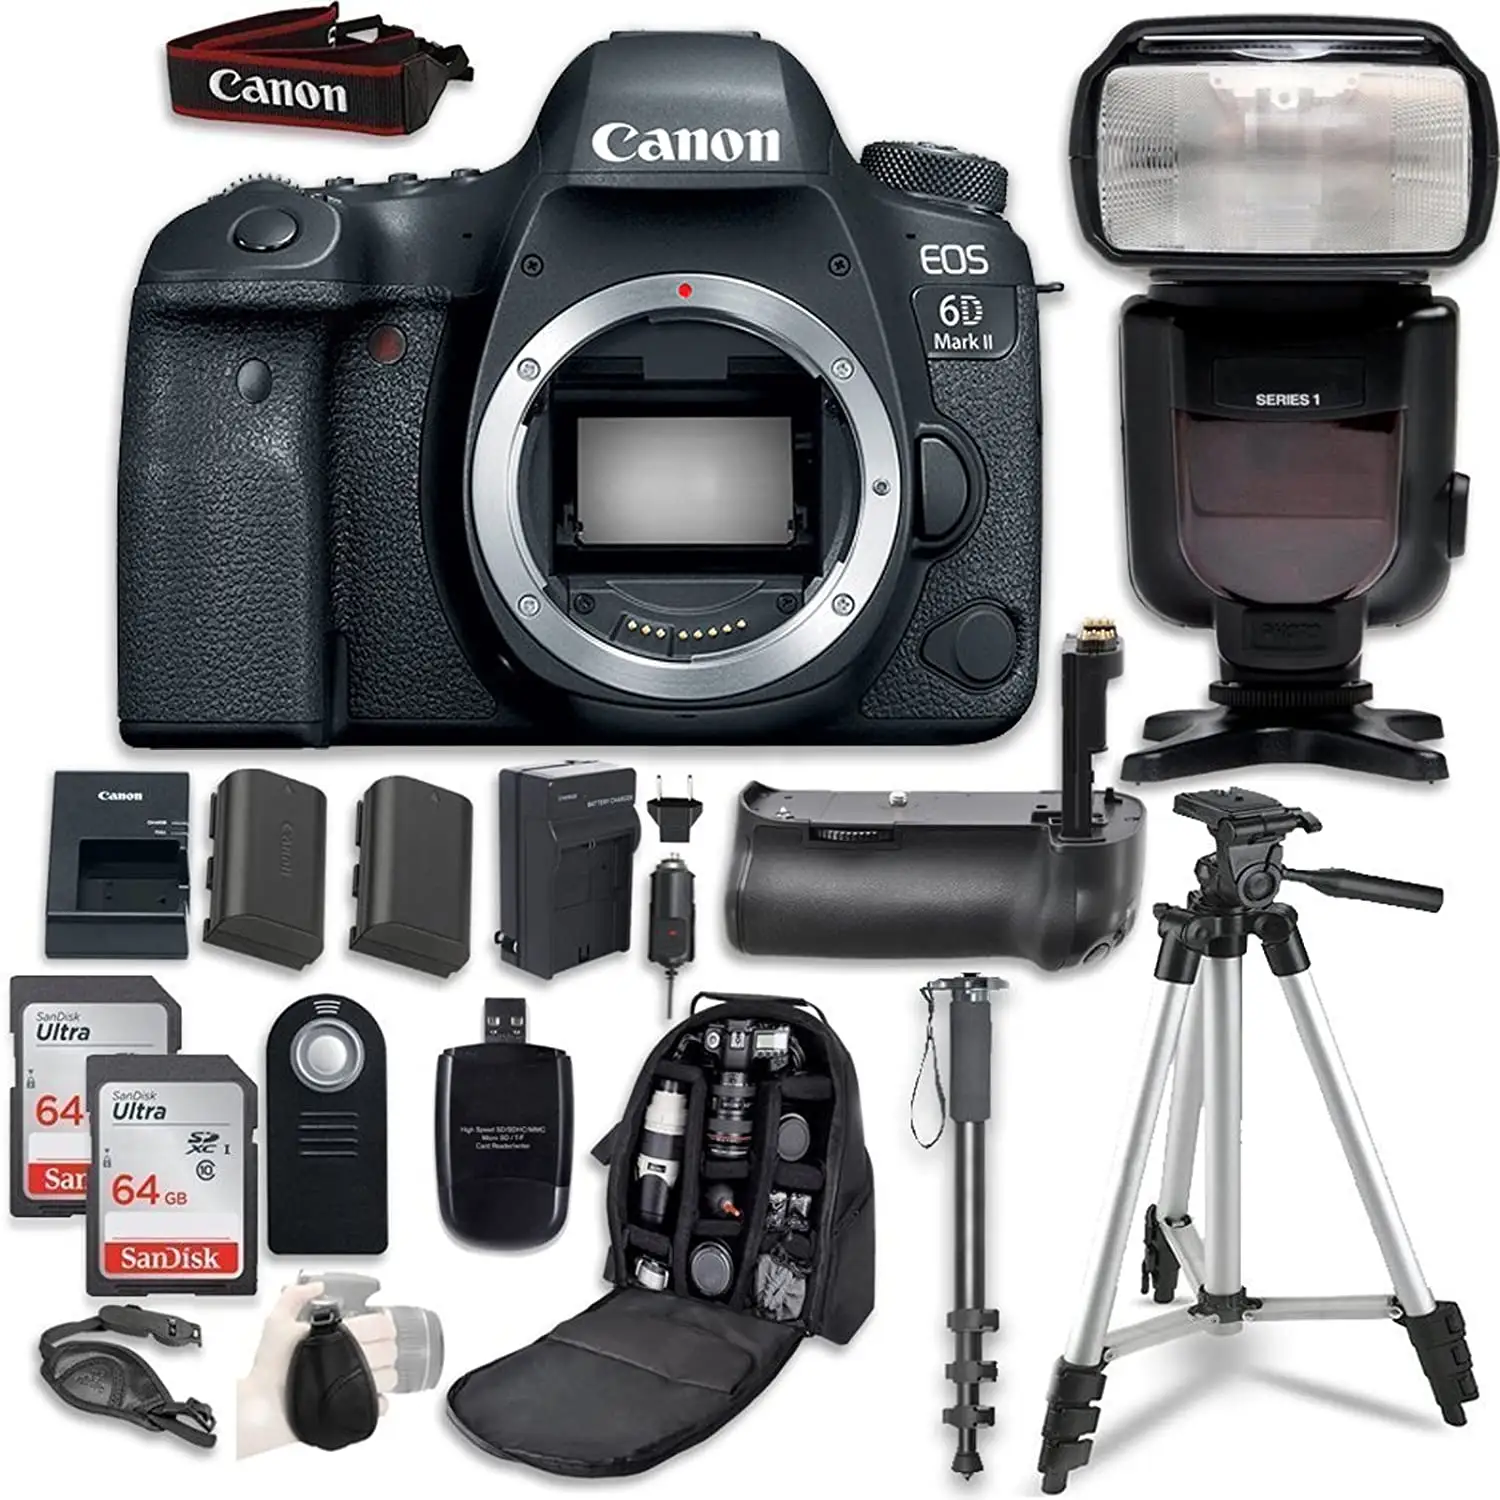 Cámaras Canon EOS 6D Mark II DSLR, lentes EF 24-105mm USM, WiFi activado con paquete, venta al por mayor